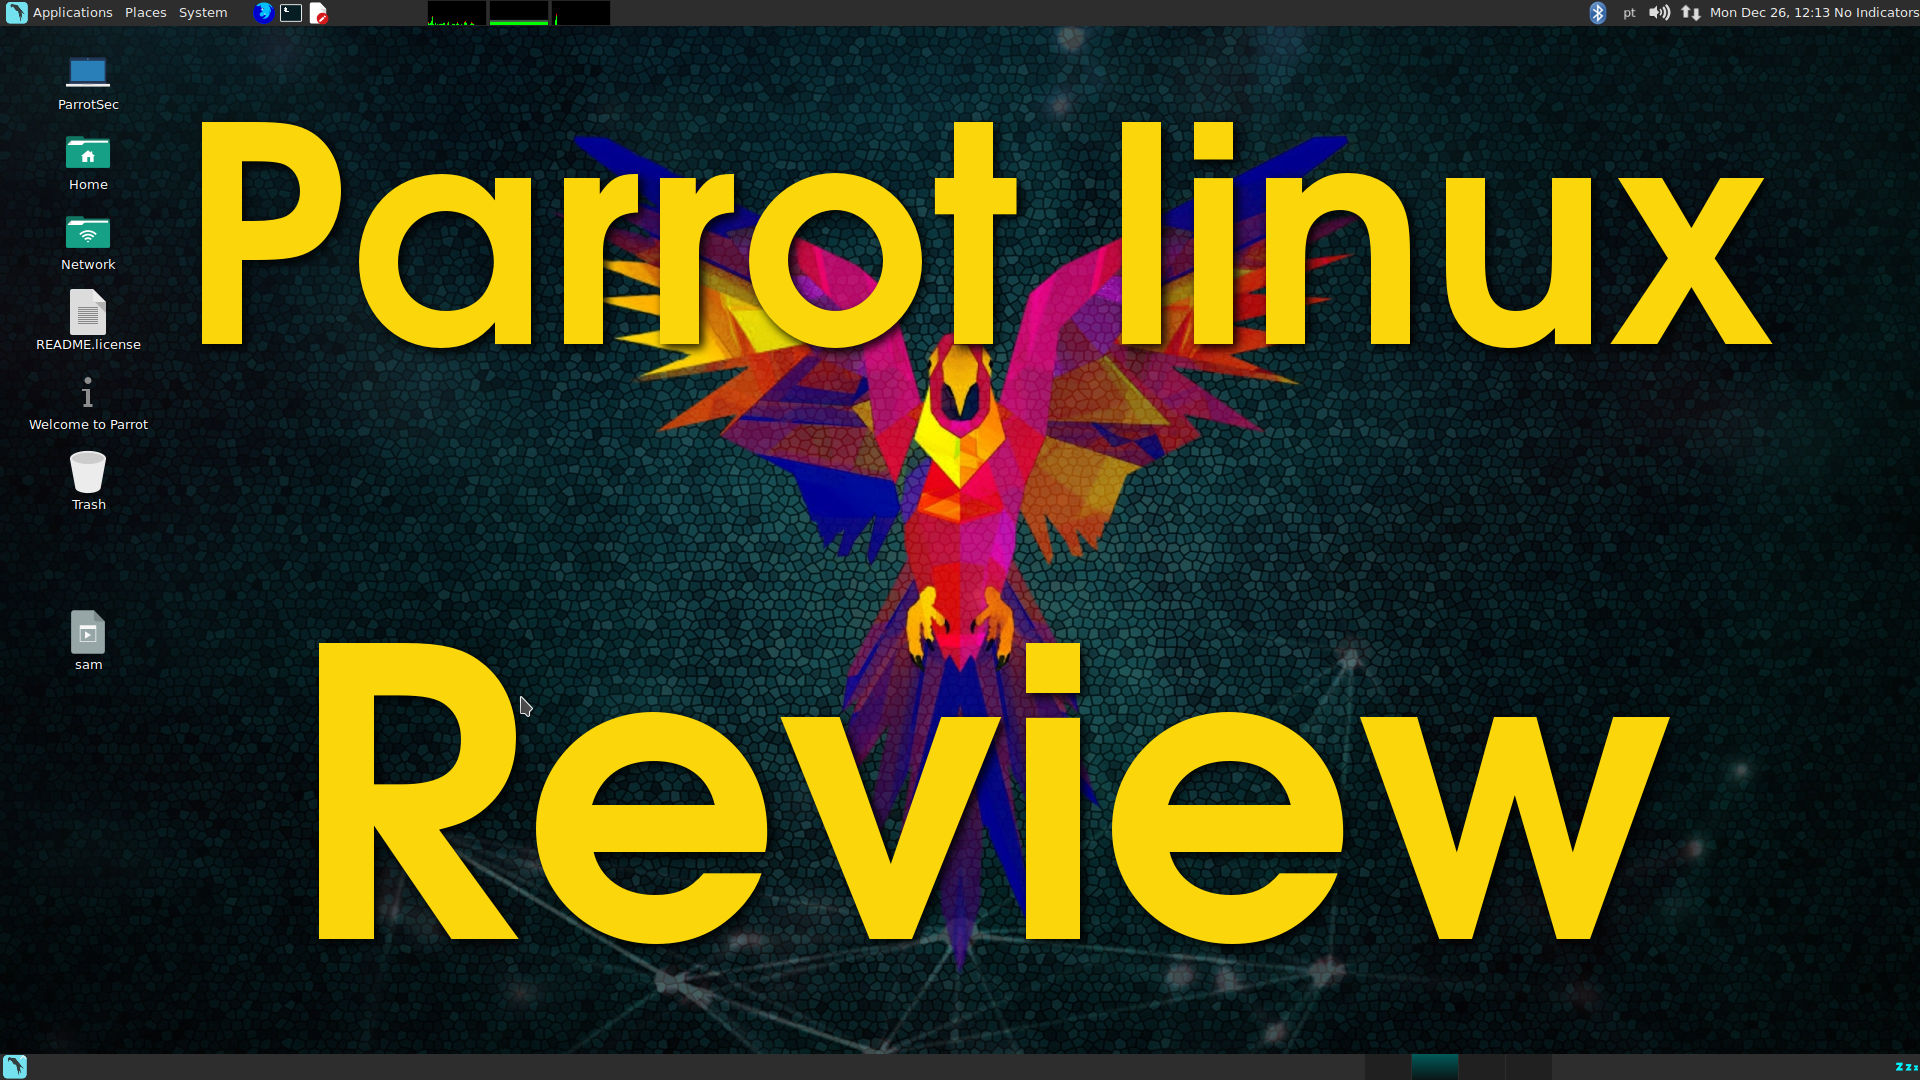 Parrot linux – Review